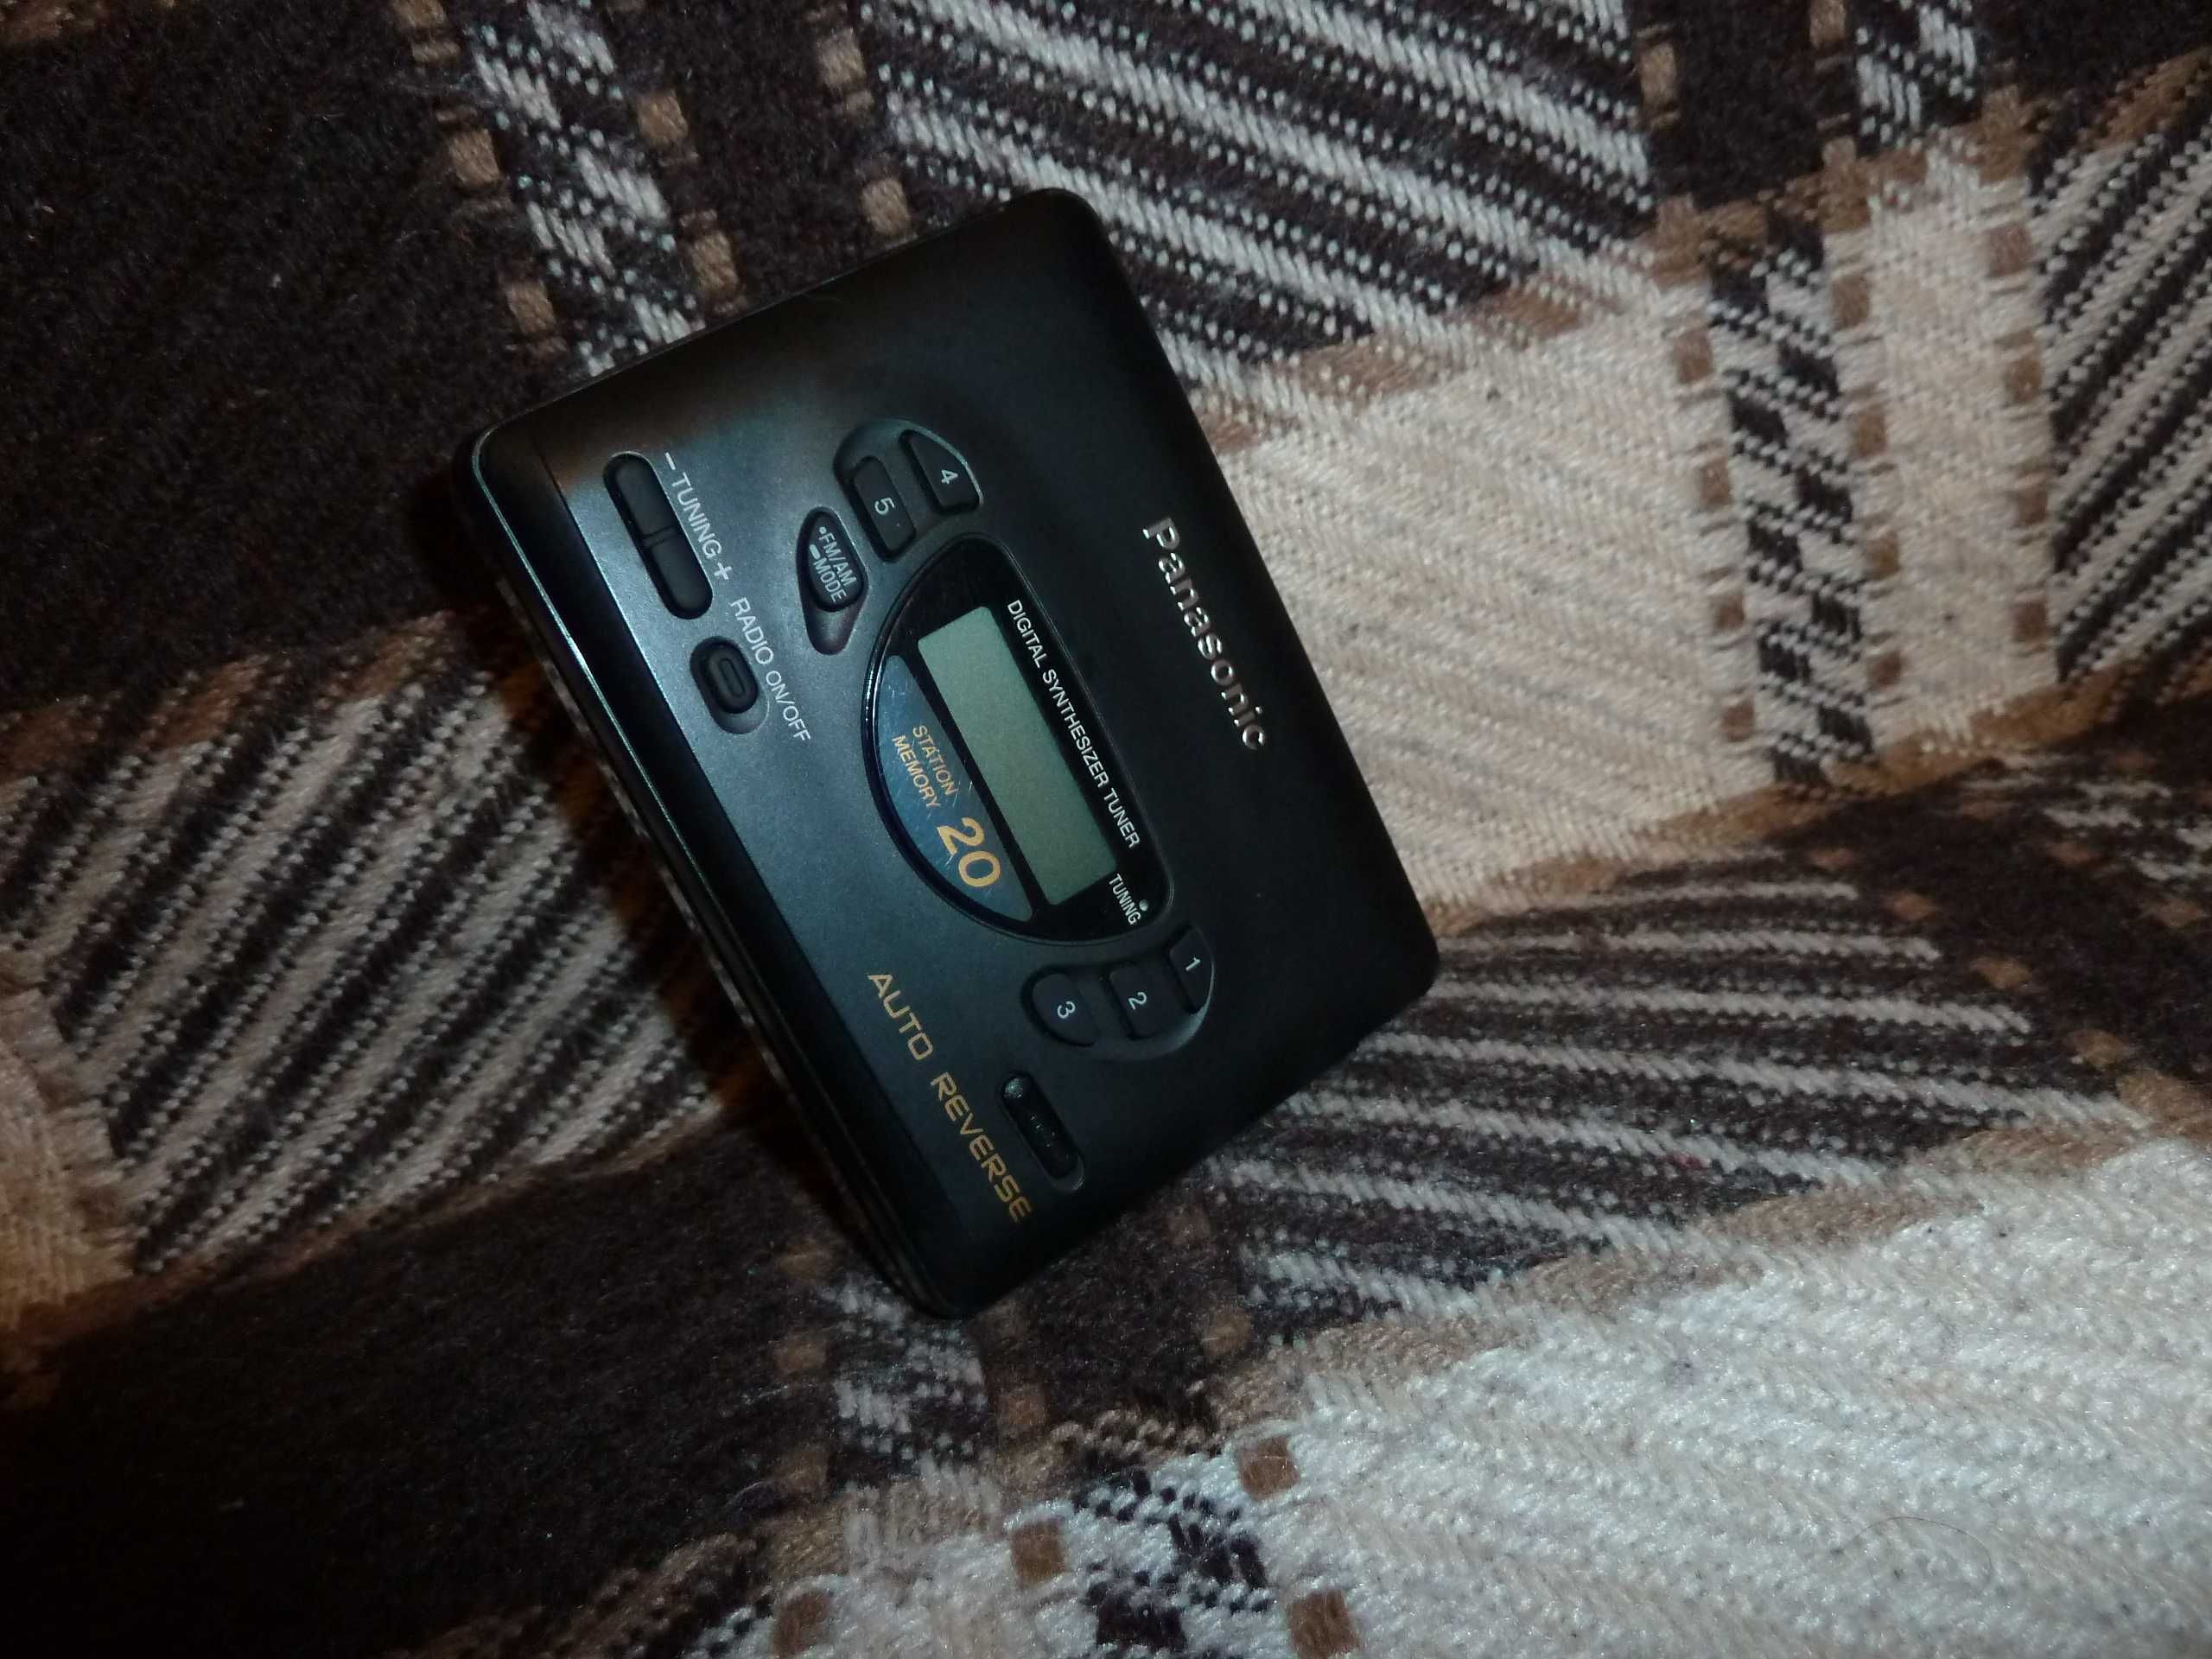 Sprawny, ładny Radio - Walkman Panasonic. Autoreverse. Zadbany.